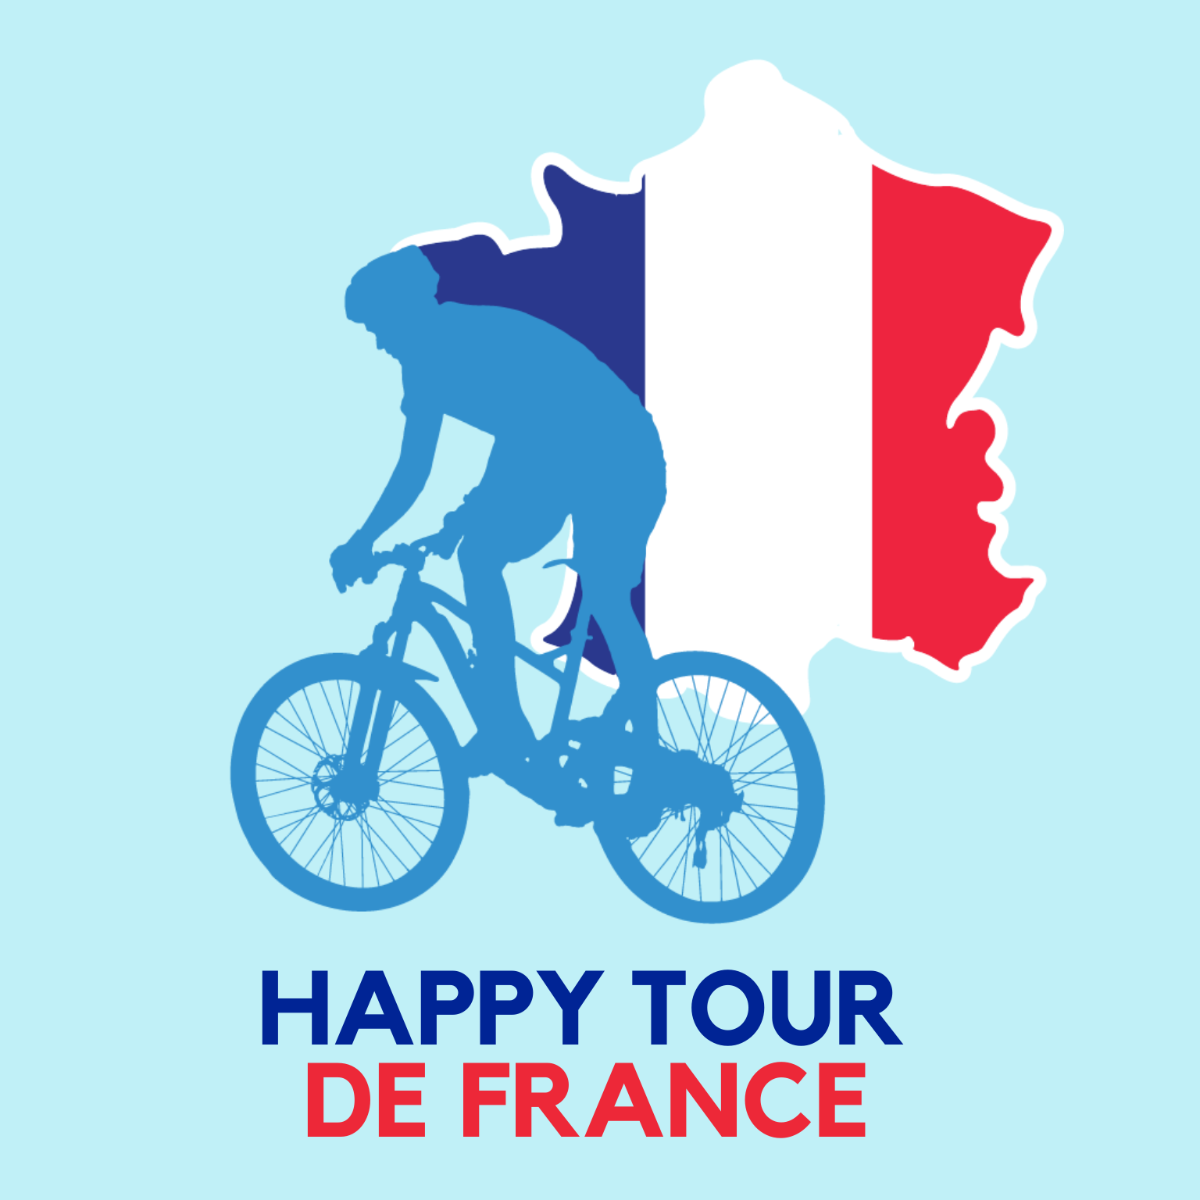 Free Happy Tour de France Vector Template